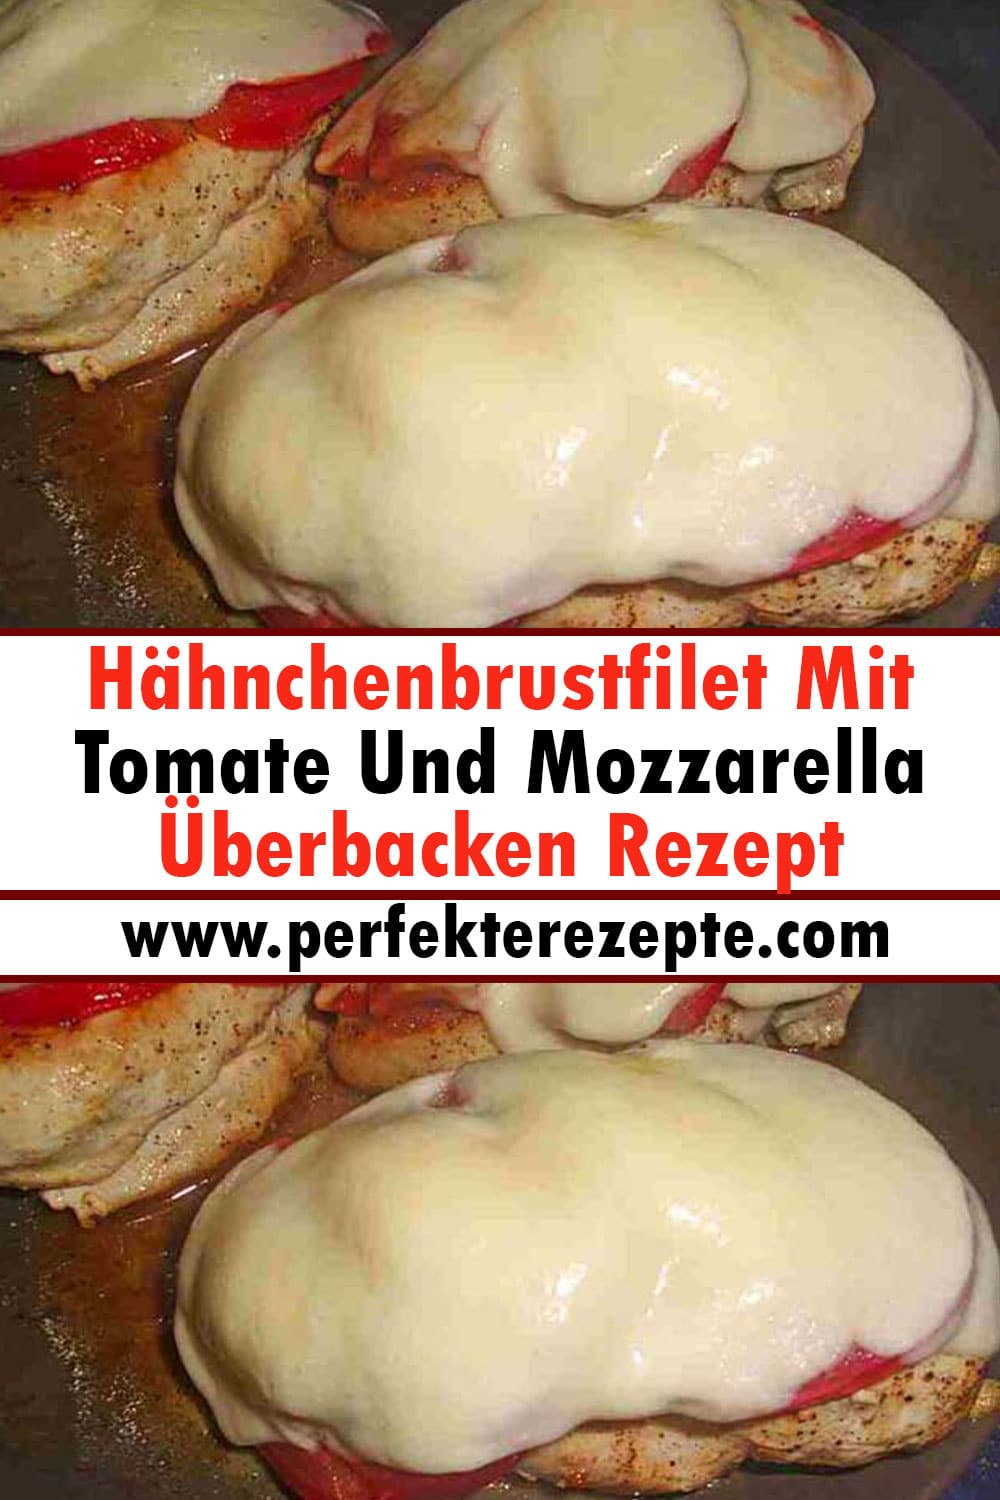 Hähnchenbrustfilet Mit Tomate Und Mozzarella Überbacken Rezept